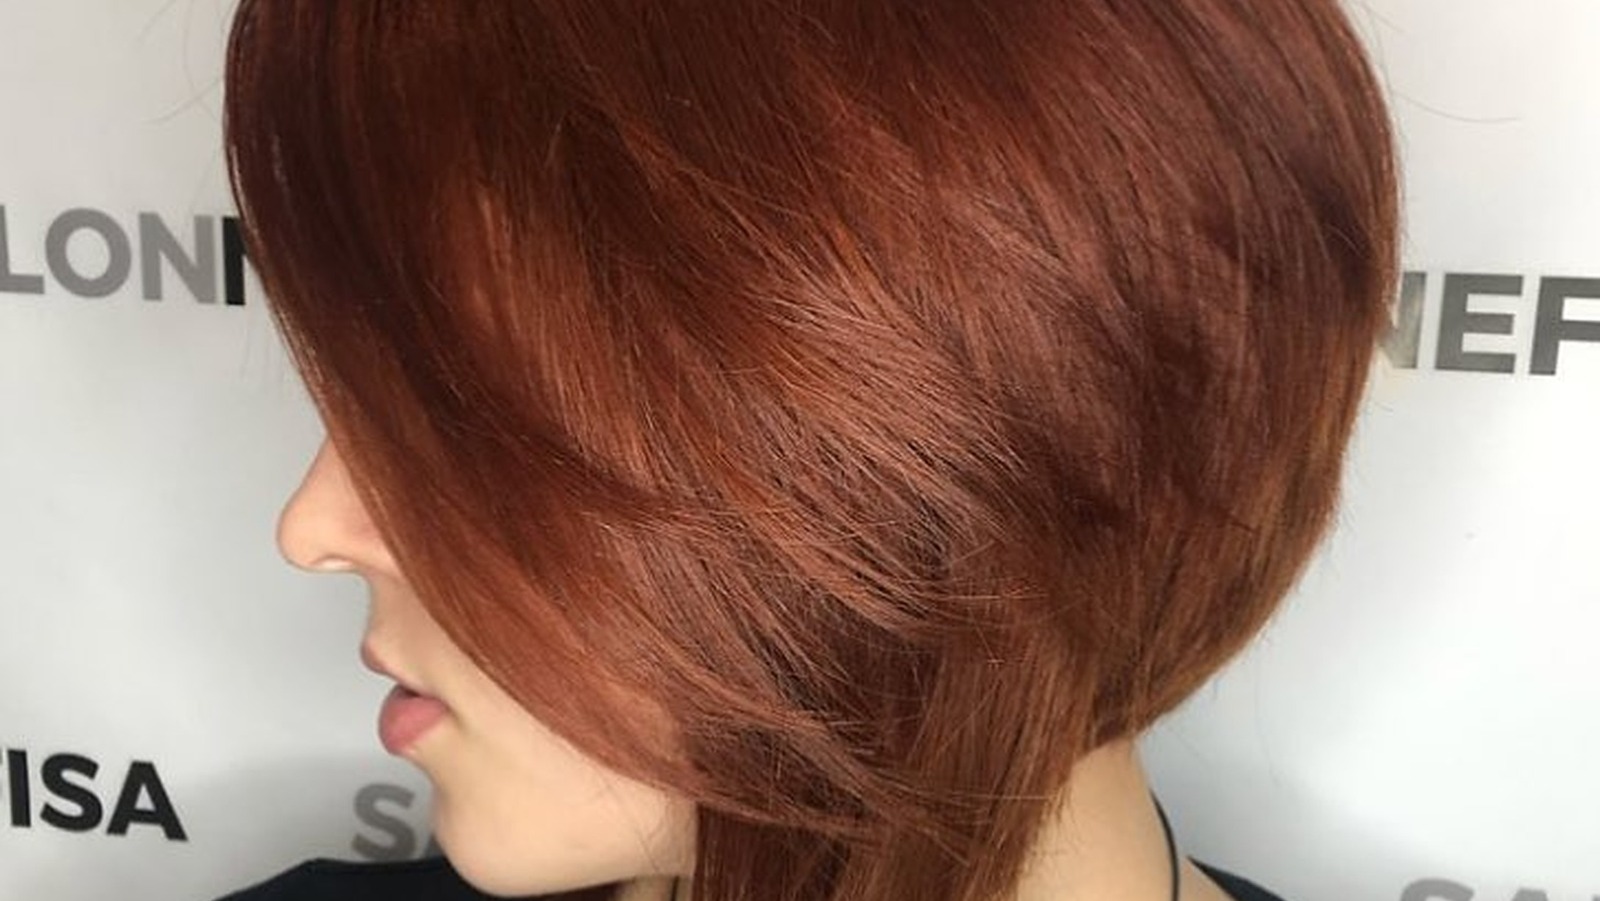 red velvet hair color